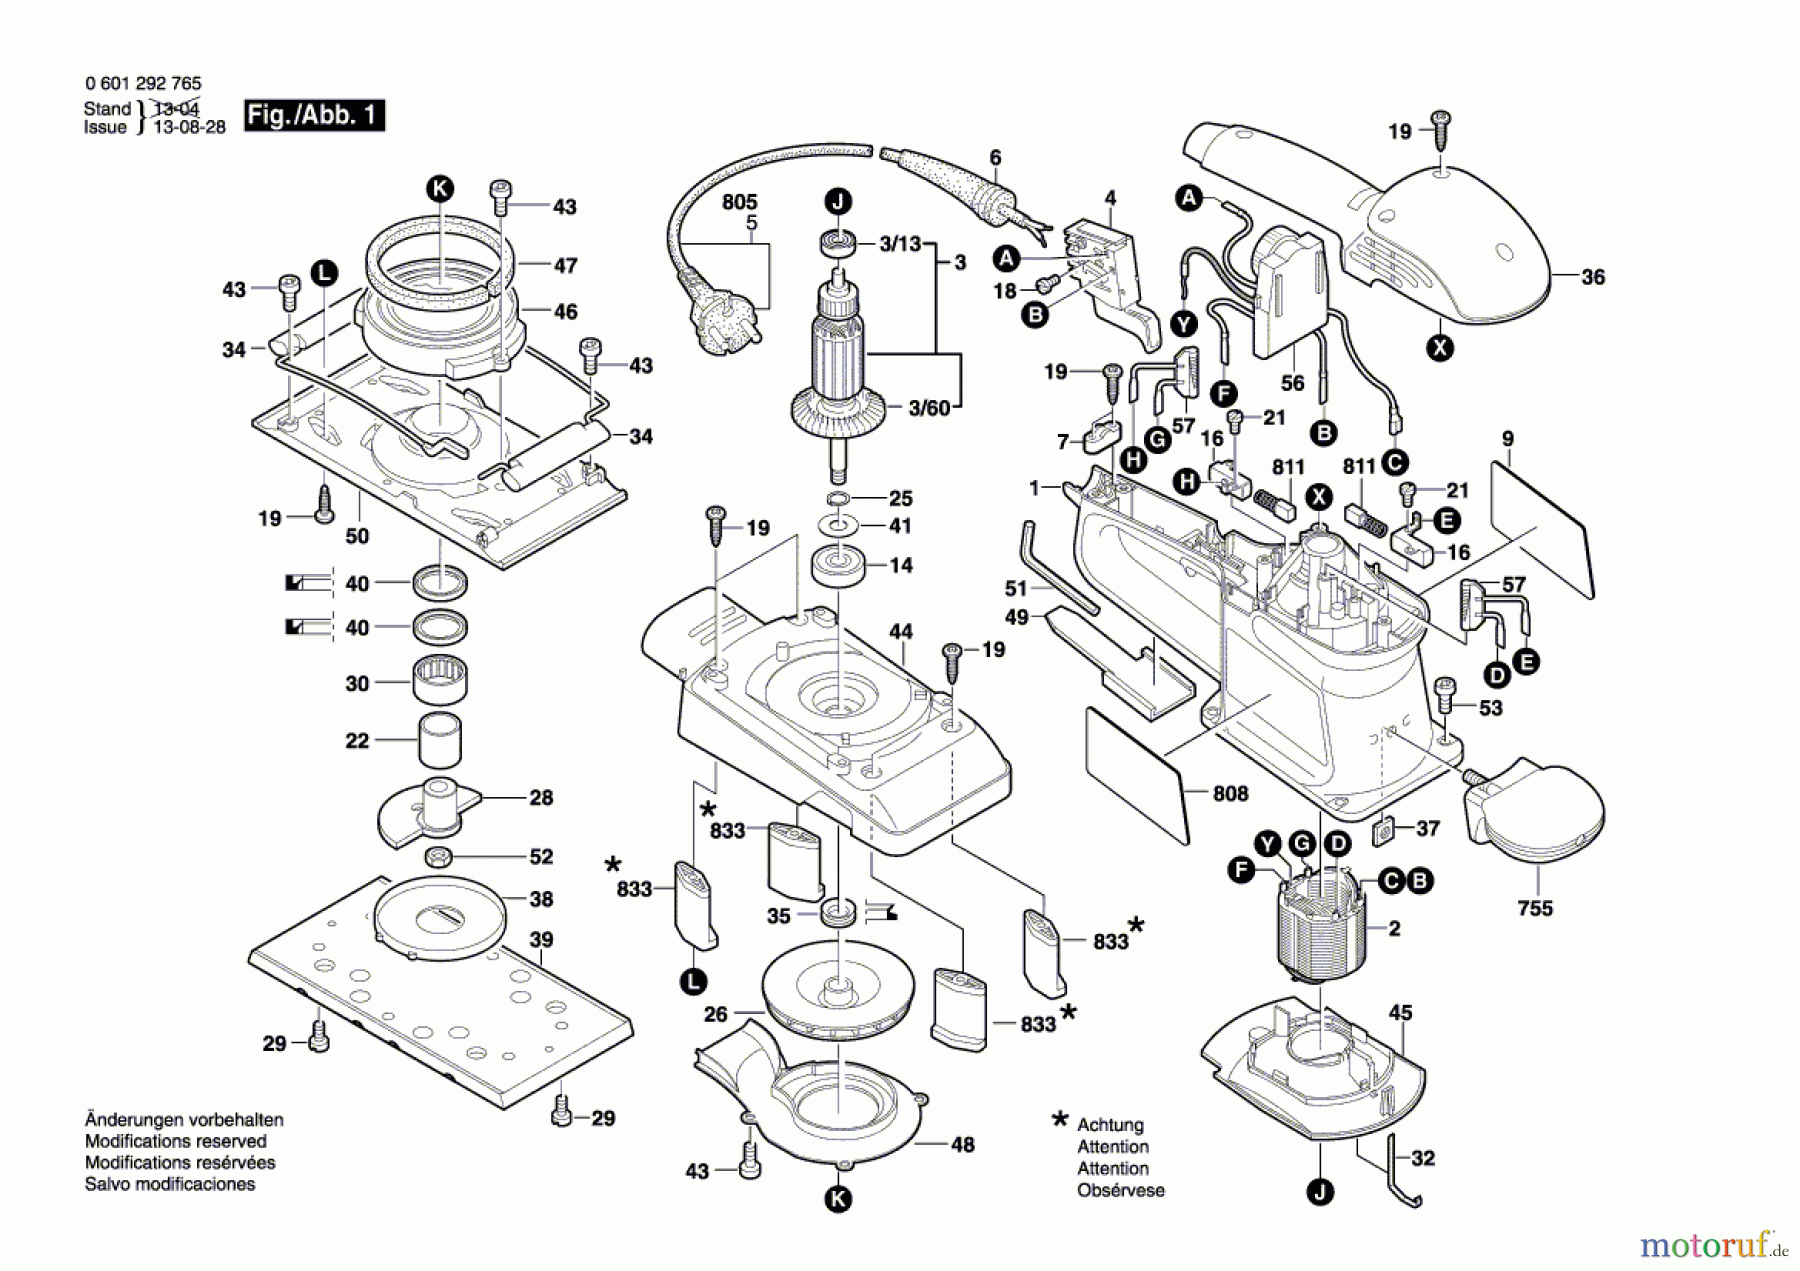  Bosch Werkzeug Schwingschleifer BOS 230 Seite 1